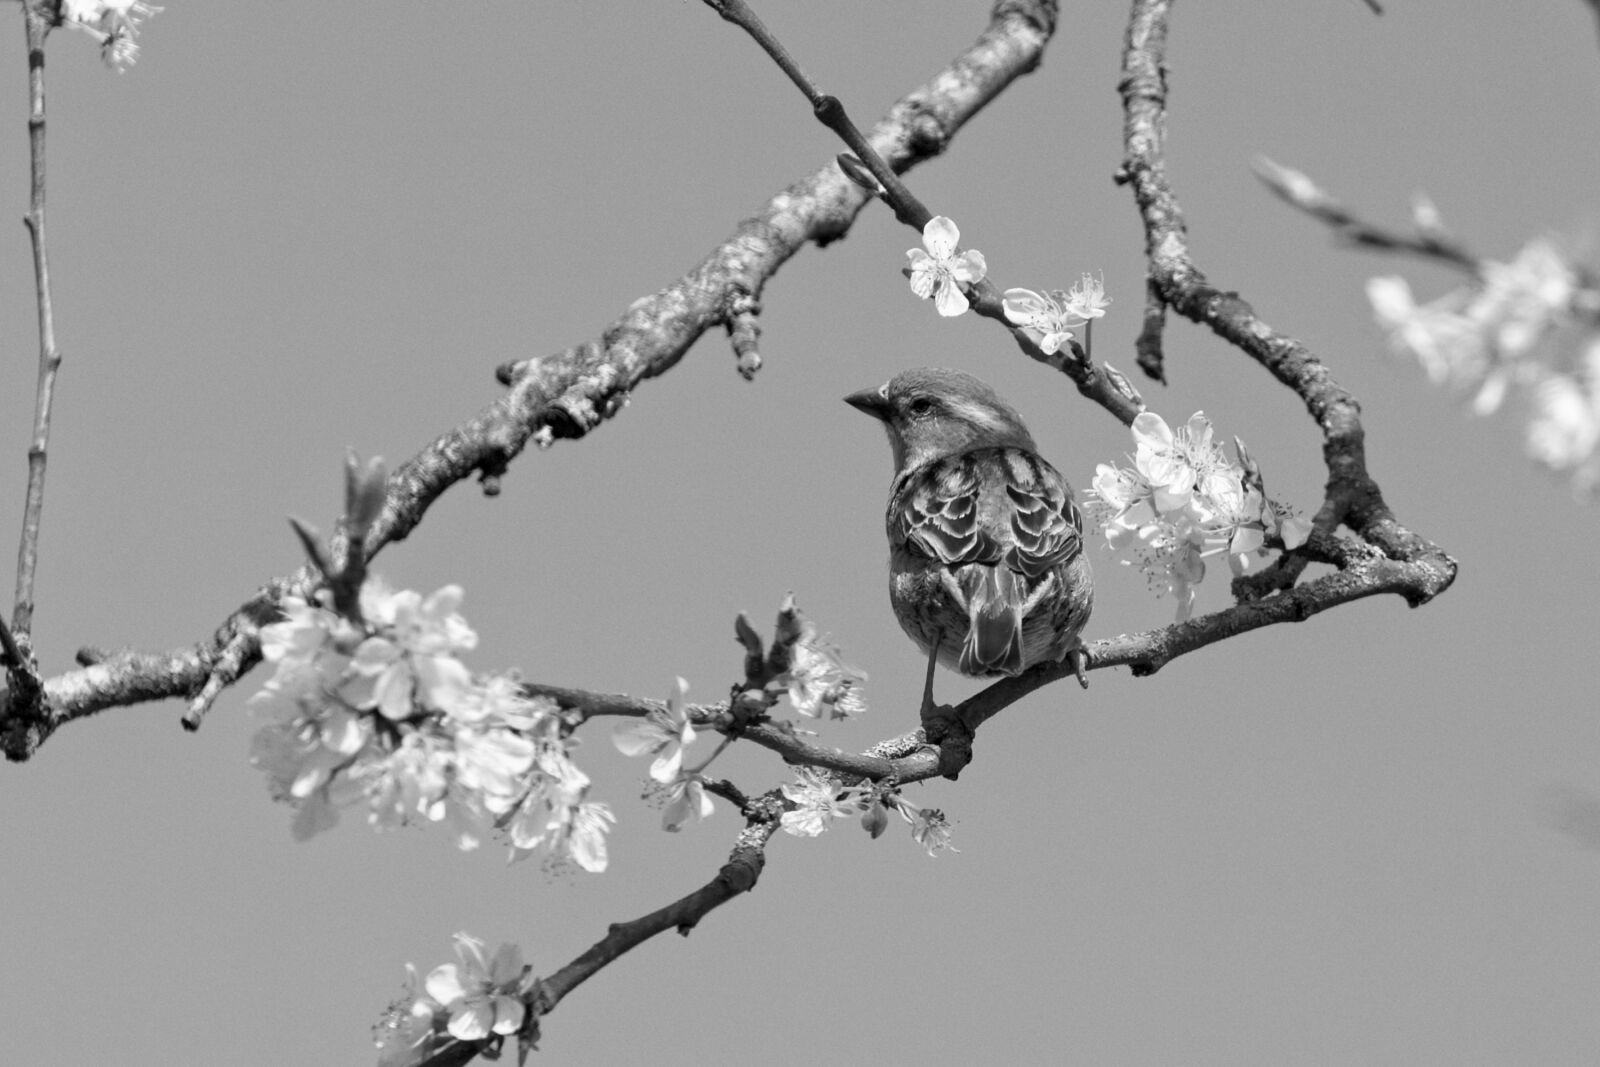 Canon EOS R sample photo. Mus, spring, bird photography